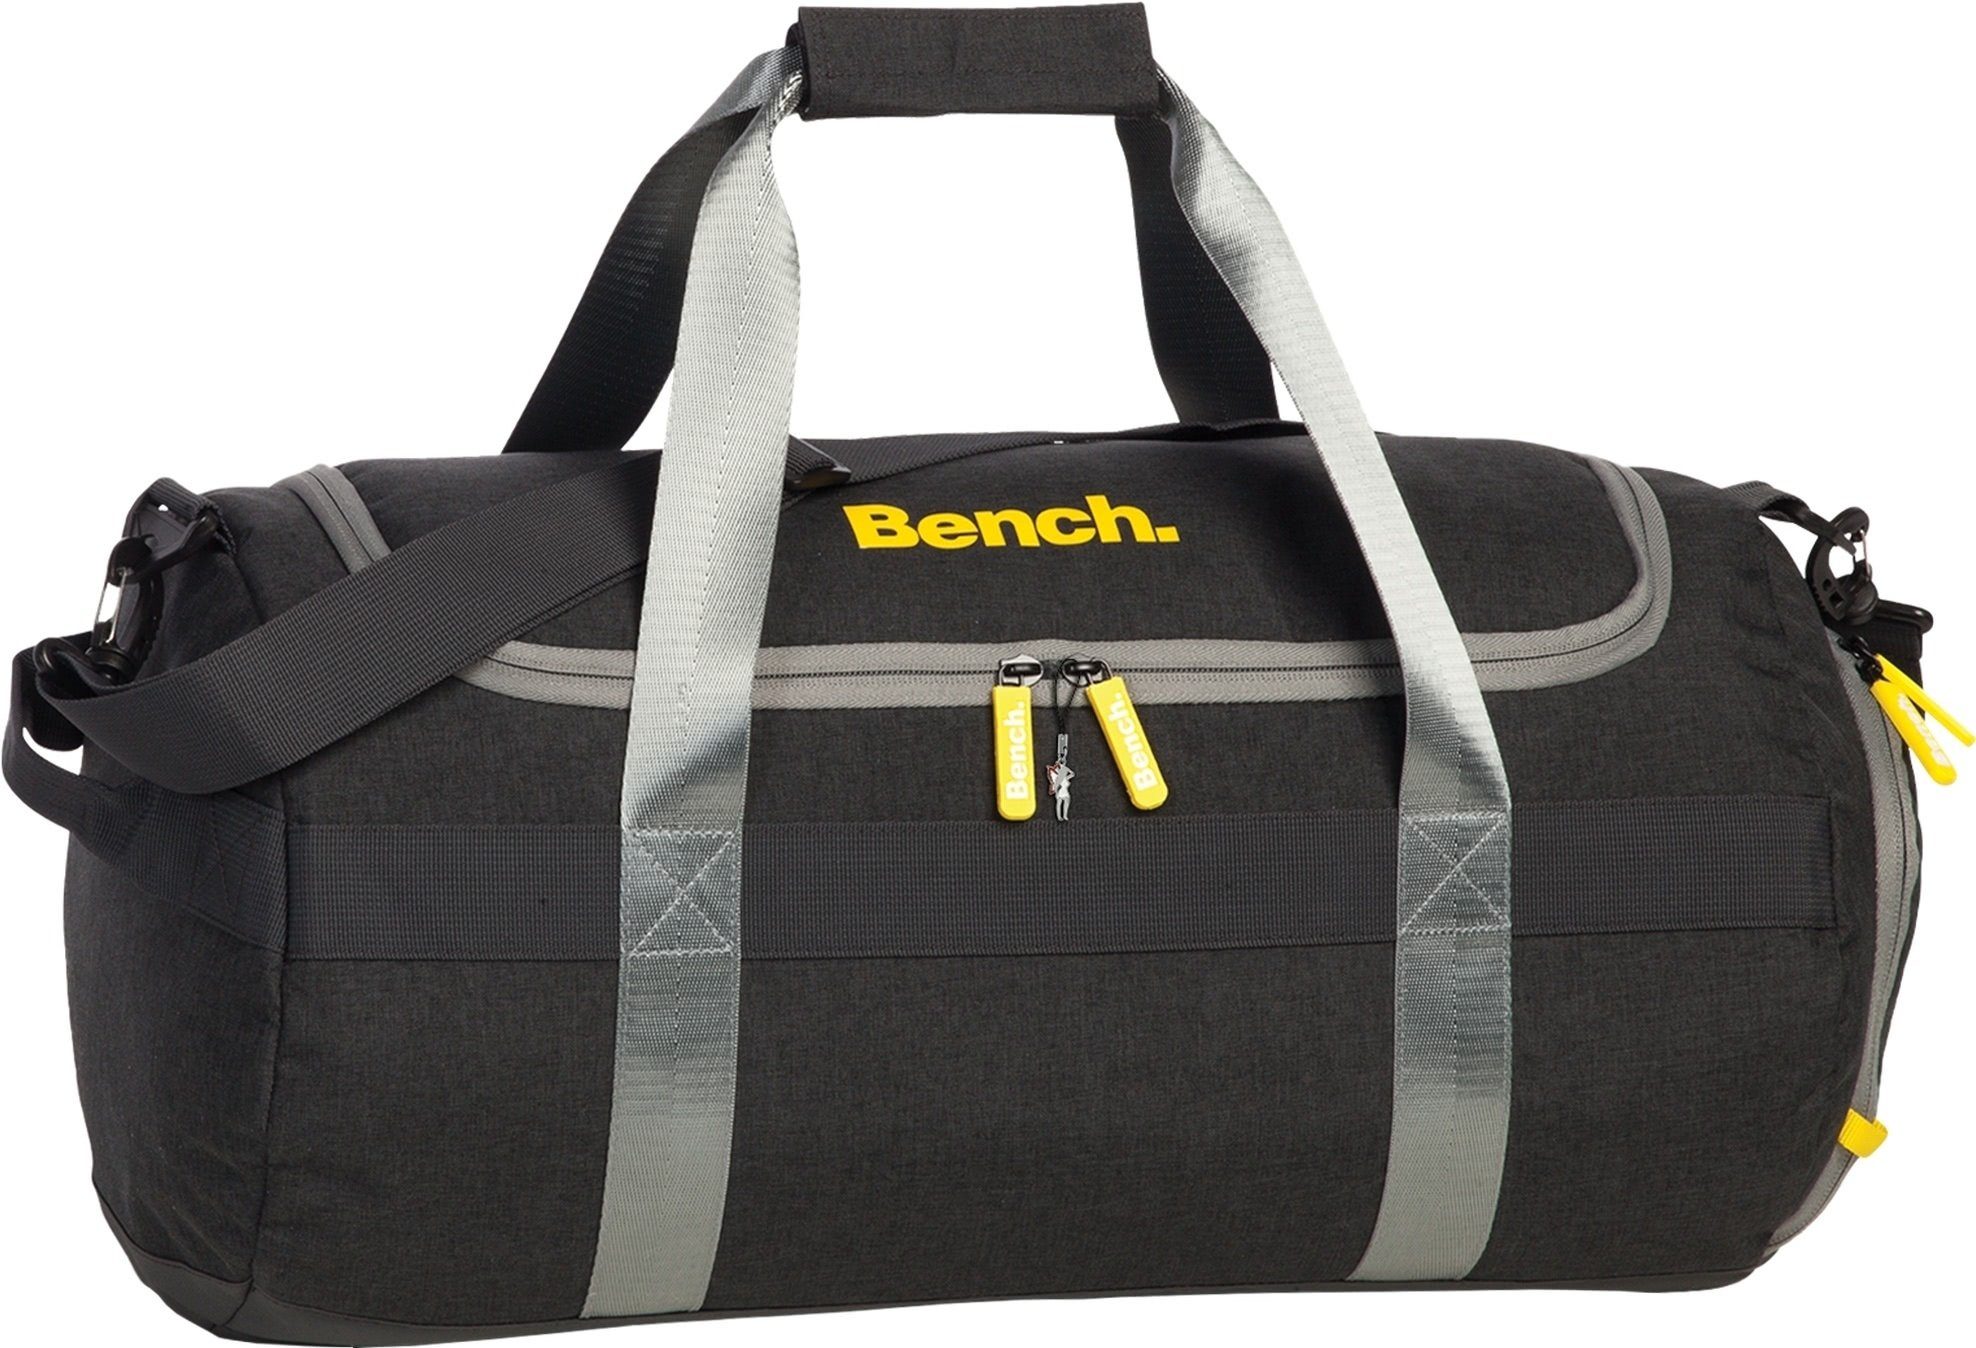 Bench. Sporttasche Bench stylische Sporttasche anthrazit (Reisetasche), Herren, Damen, Jugen Reisetasche, Sporttasche Polyester, schwarz, an